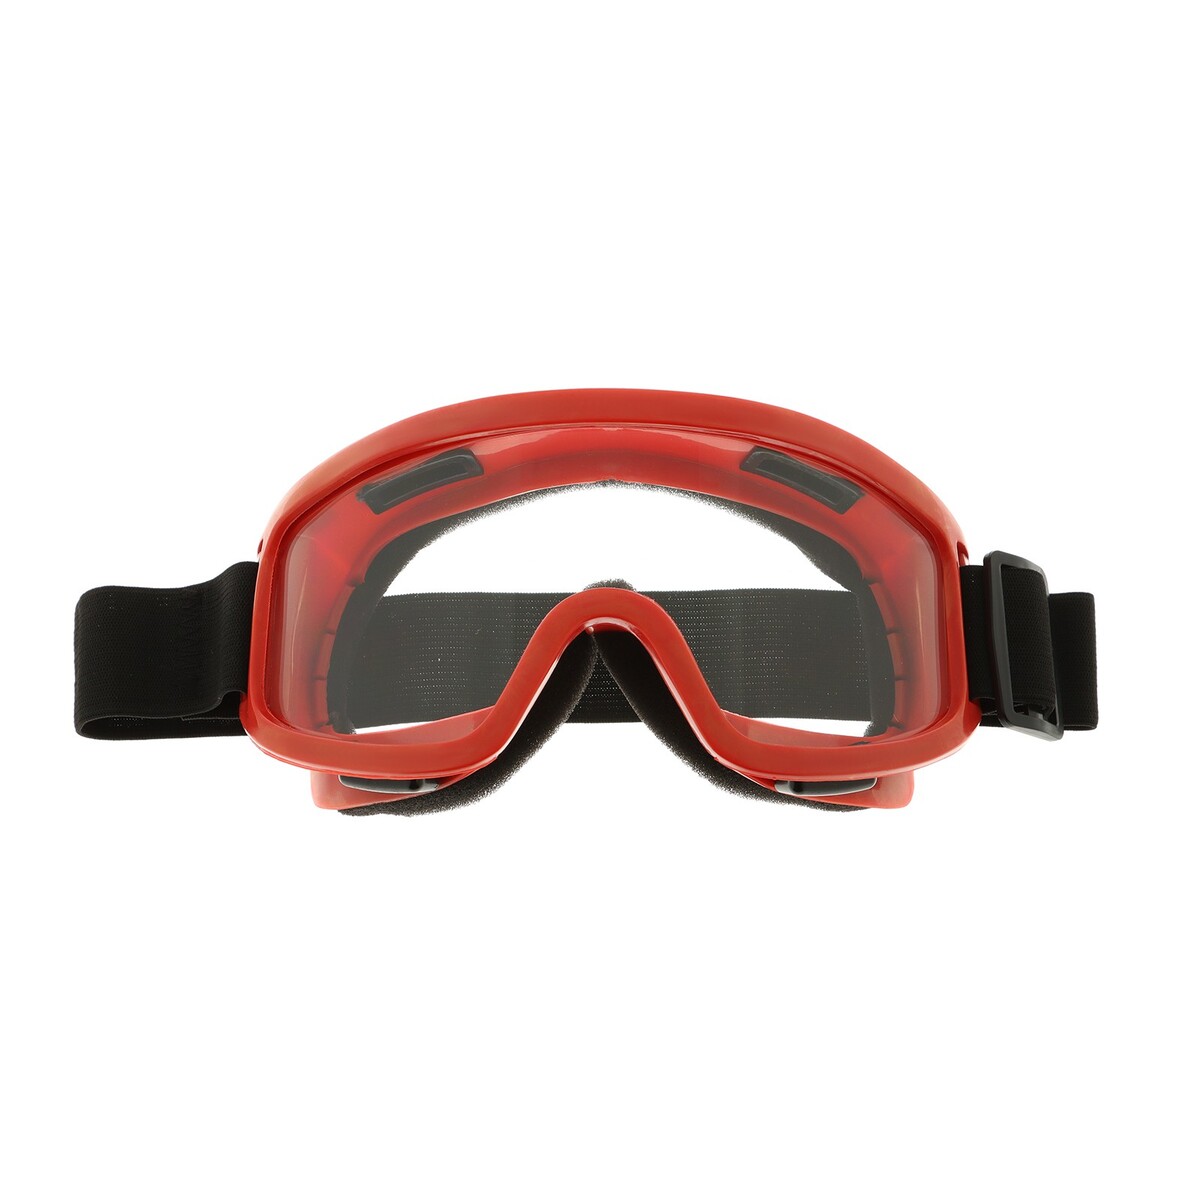 Очки-маска для езды на мототехнике, стекло прозрачное, цвет желтый очки маска со съемной защитой носа стекло прозрачное черные